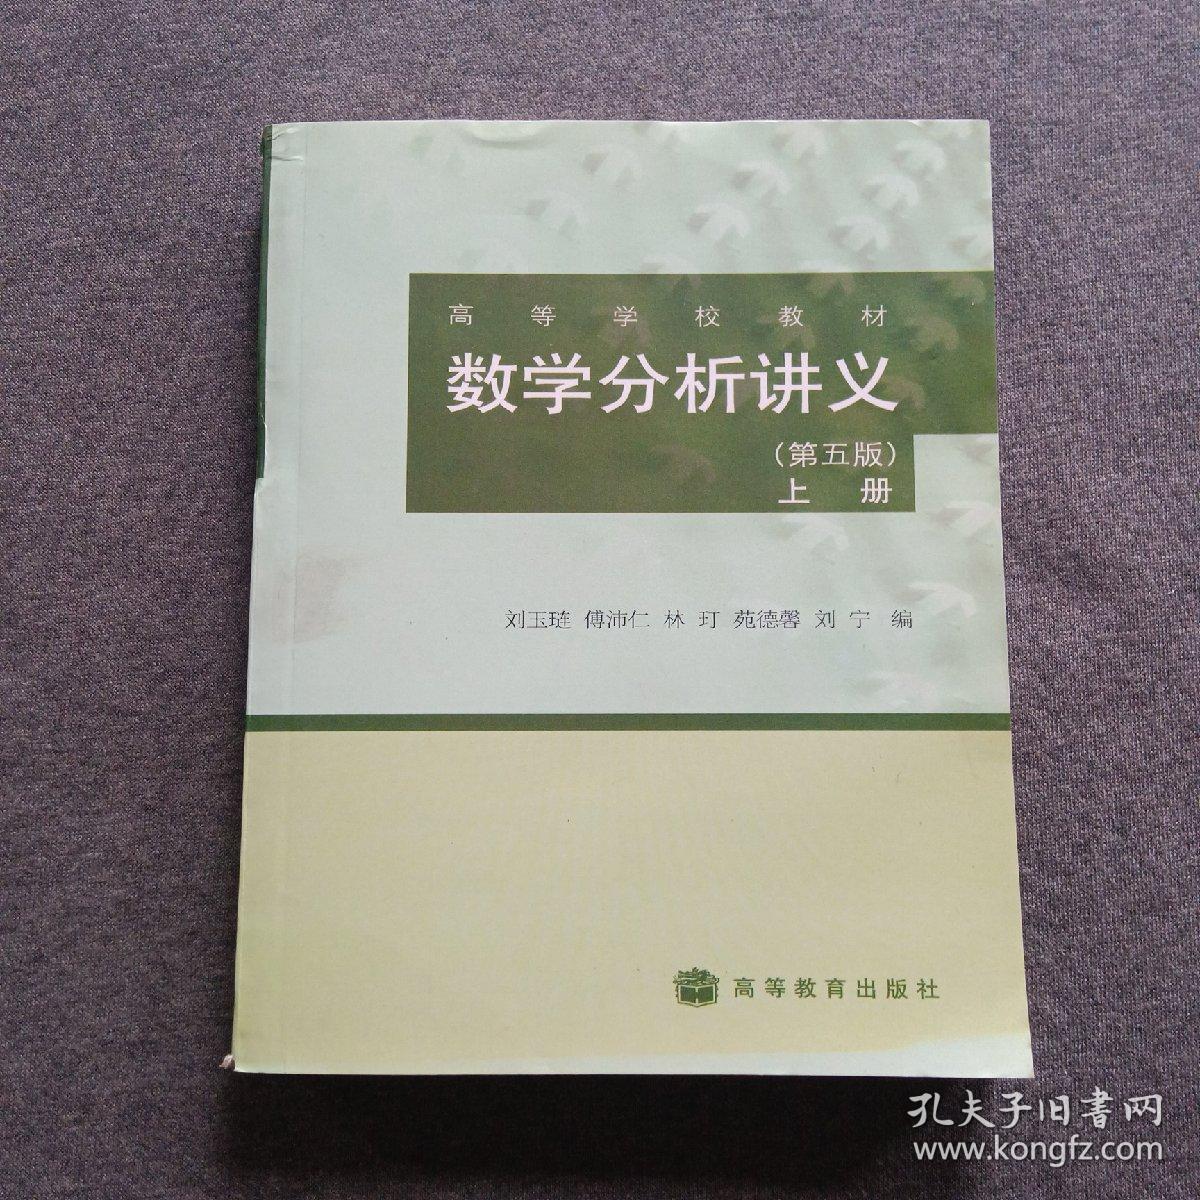 正版未使用 数学分析讲义/刘玉琏/第5版/上 201205-5版5次 定价28.80